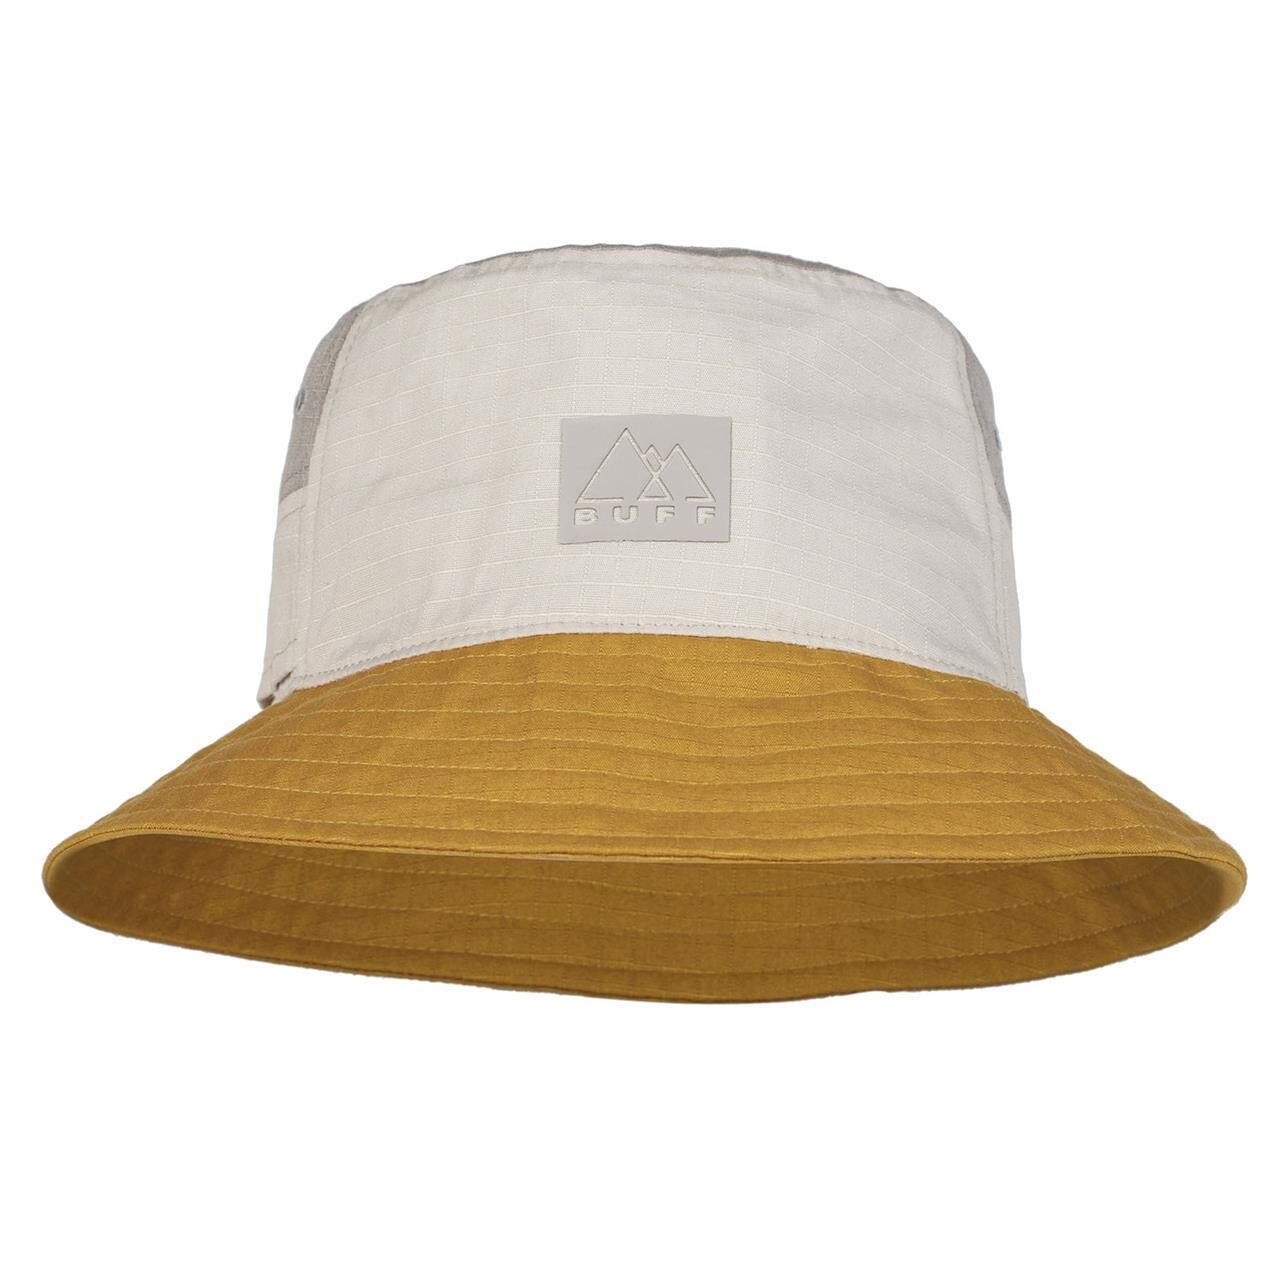 Buff Sun Bucket Hat (Gul (HAK OCHER) Large/x-large)